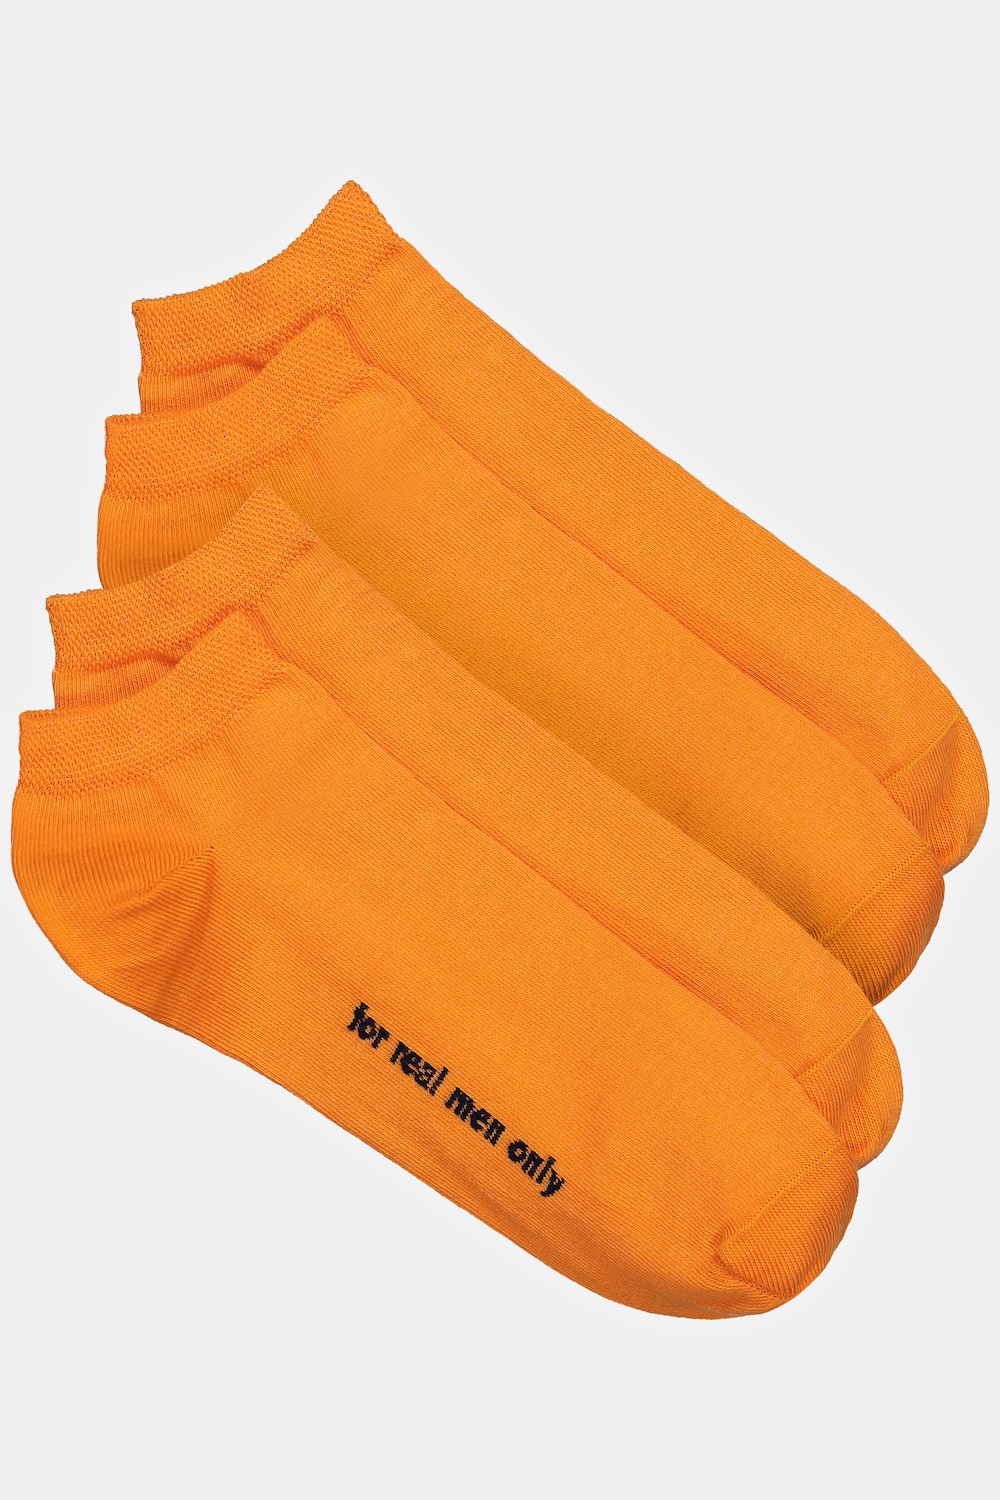 grandes tailles chaussettes pour sneakers, hommes, orange, taille: 51-53, coton/fibres synthétiques, jp1880